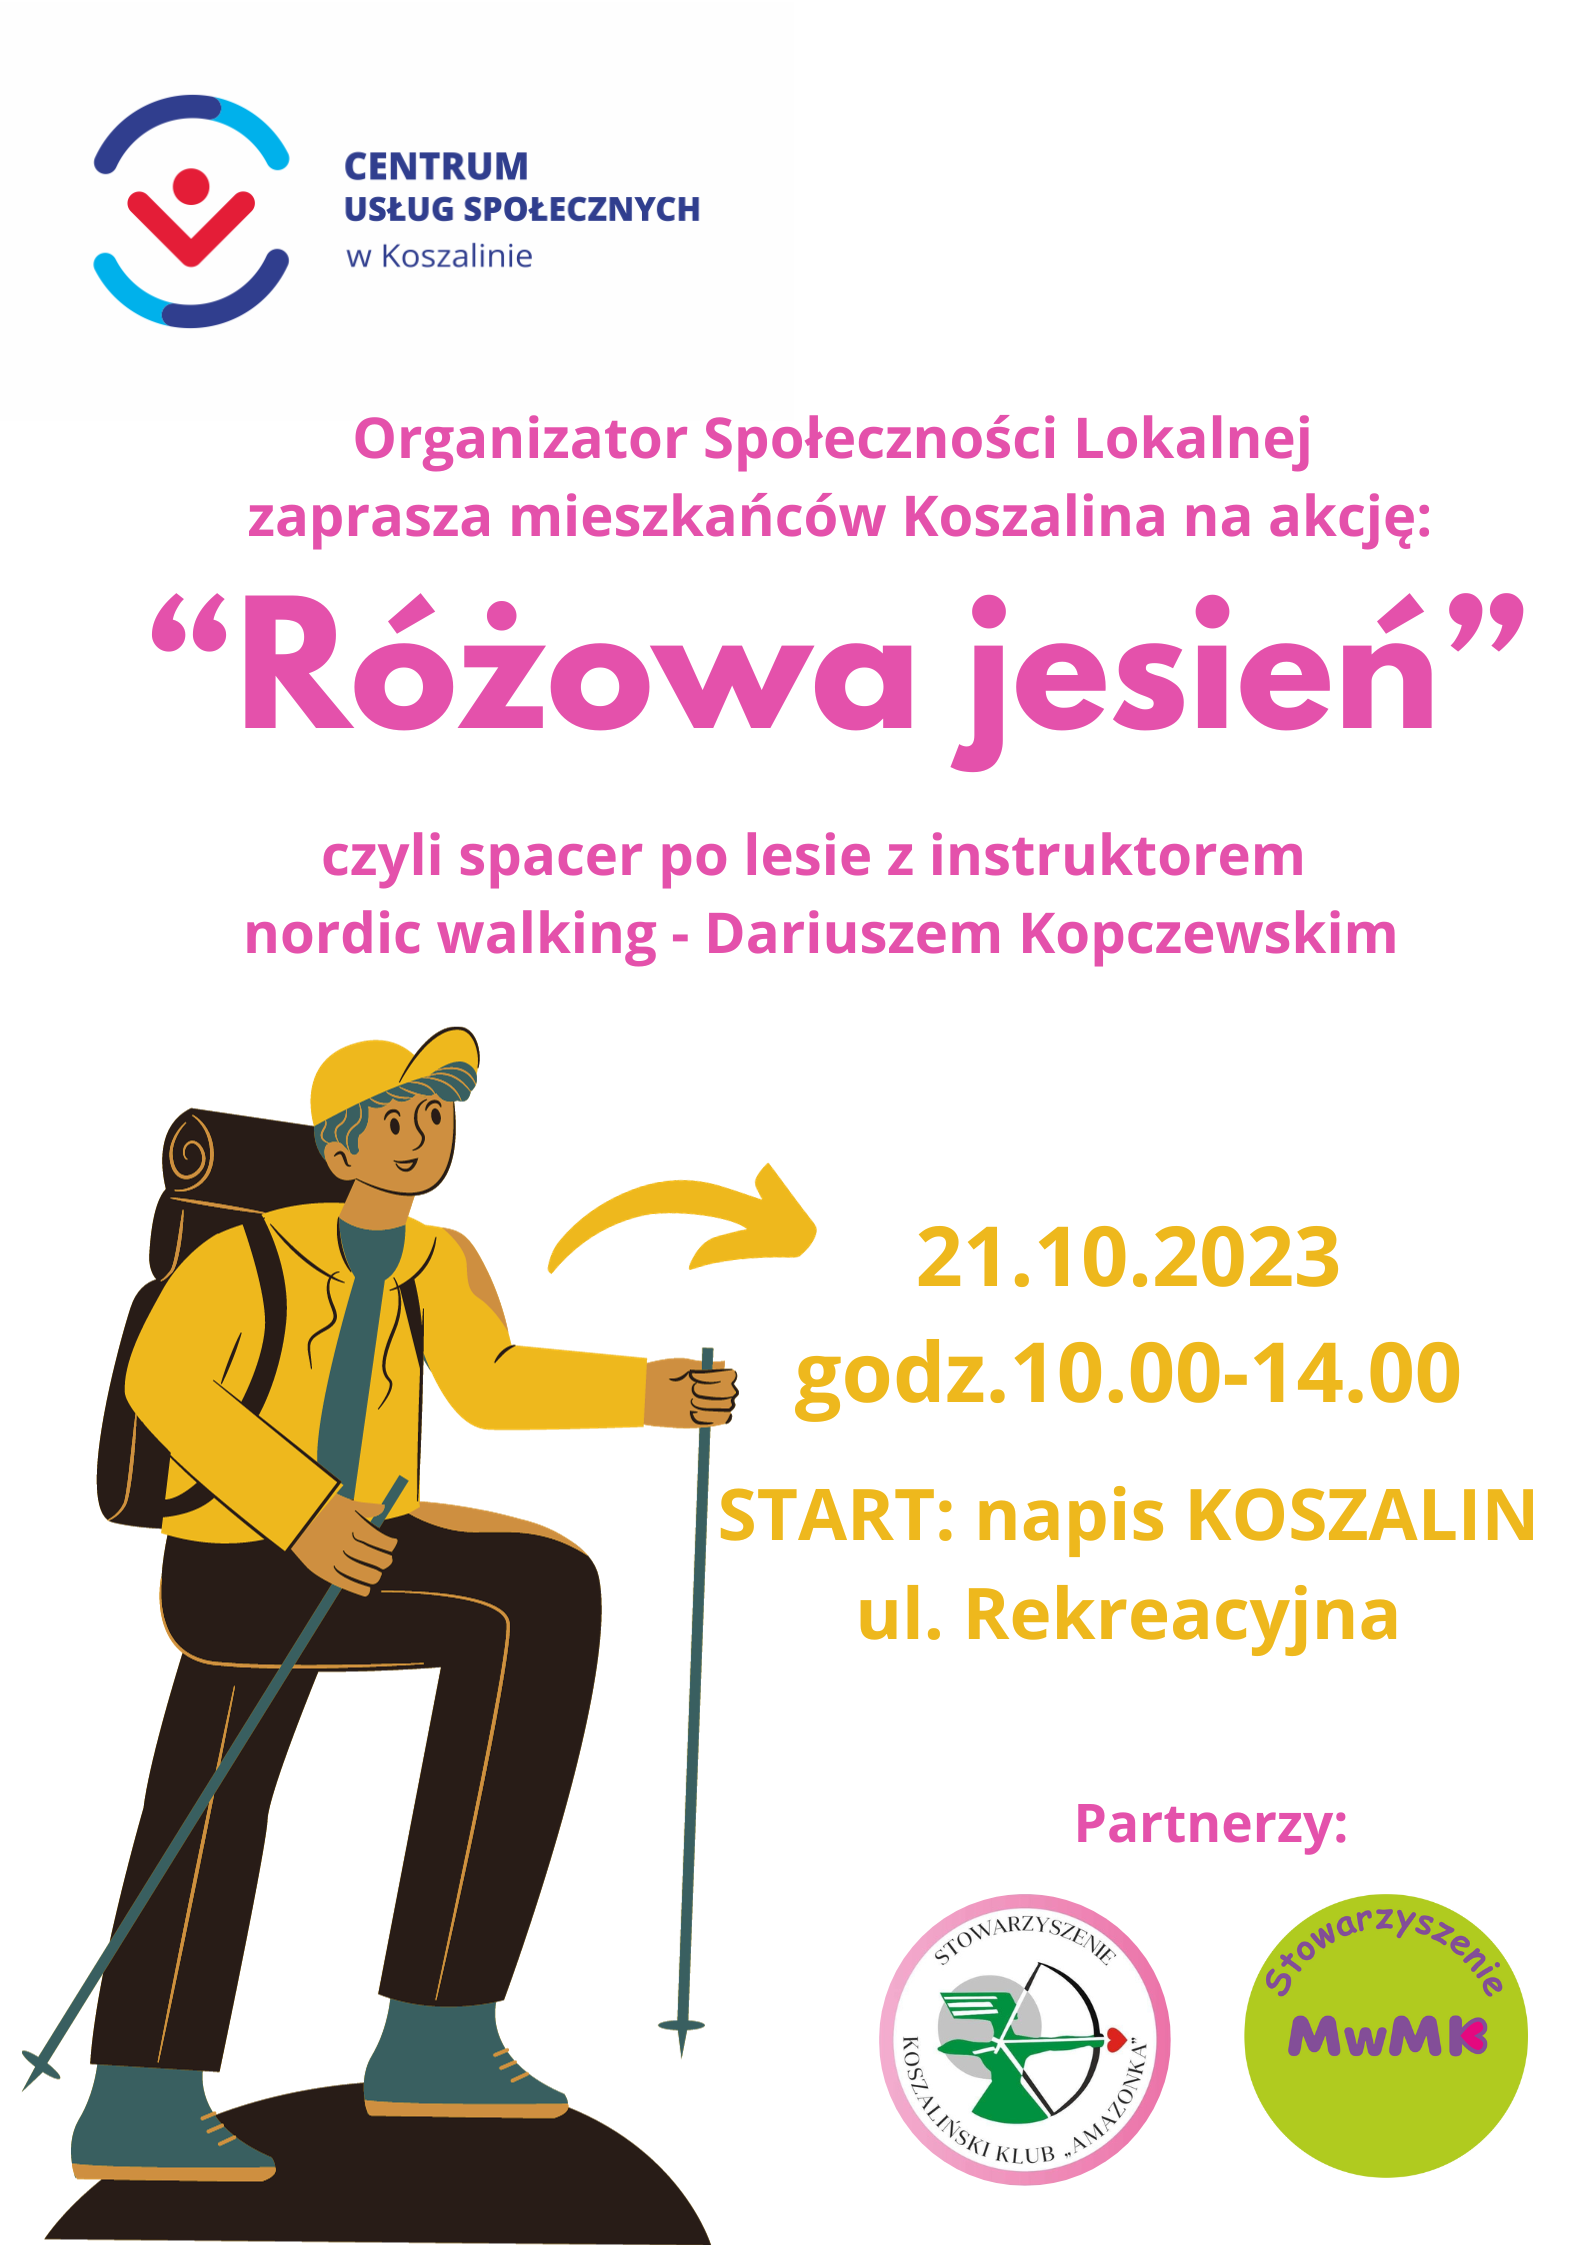 Plakat przedstawia człowieka trzymajacego kijki do spacerowania oraz informacje dotyczące godziny i miejsca zbiórki na spacerze dla mieszkańców Koszalina